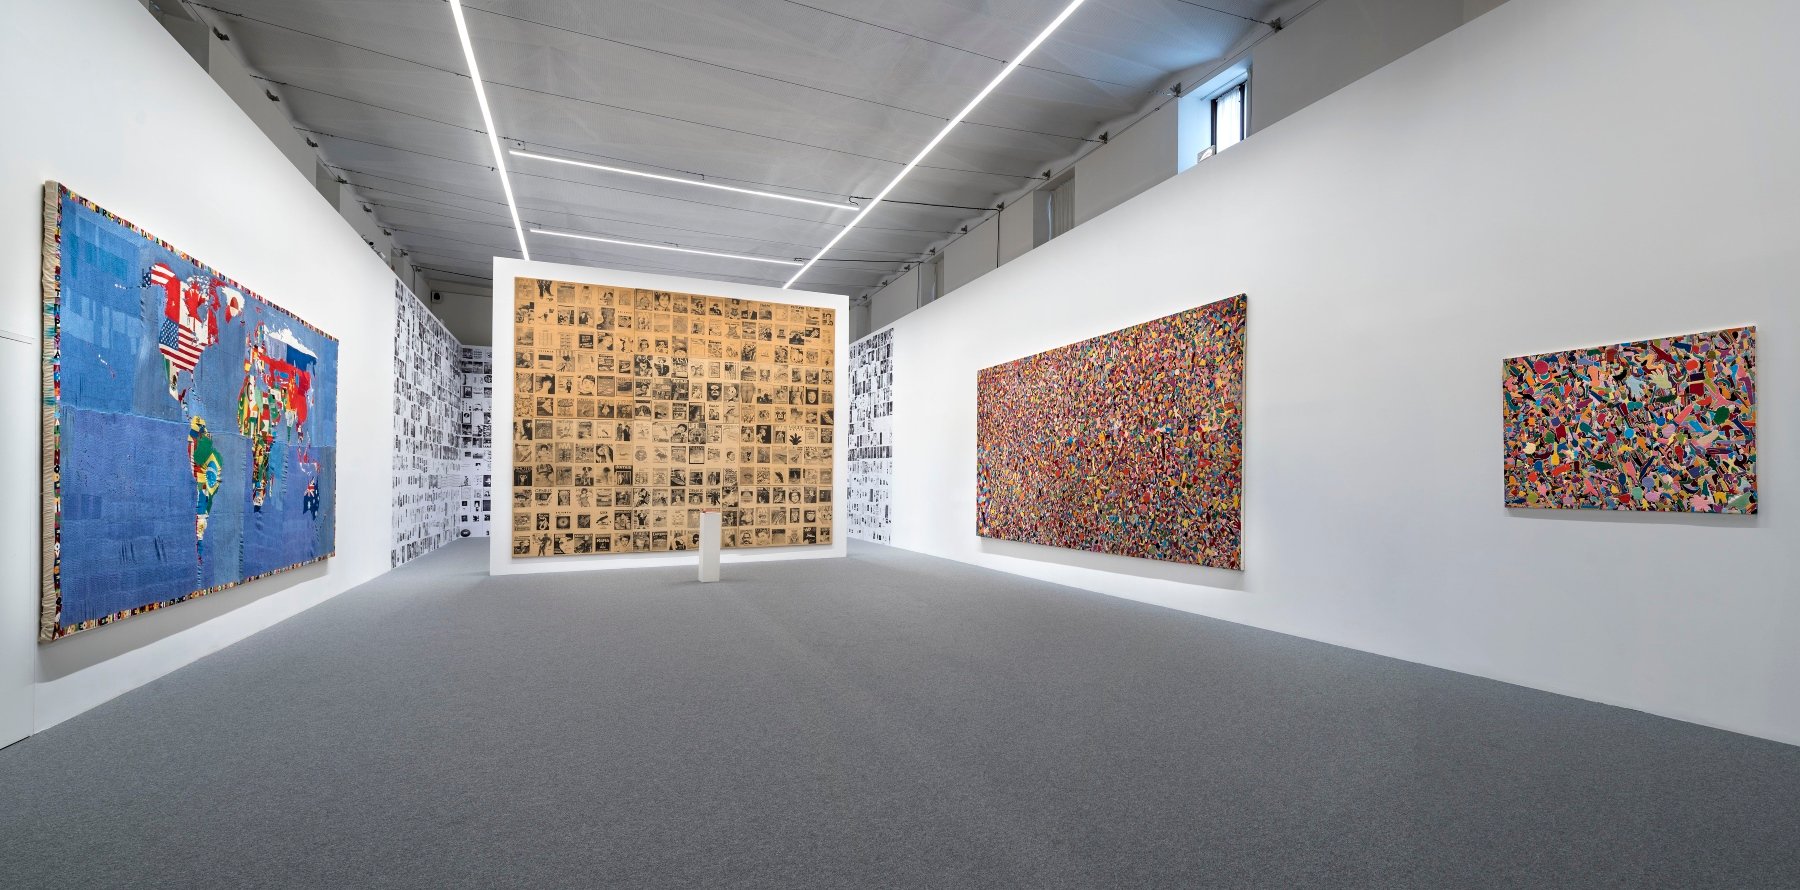 Alighiero Boetti: Minimum/Maximum, installation view at Fondazione Giorgio Cini, Venezia 2017, photo Matteo De Fina